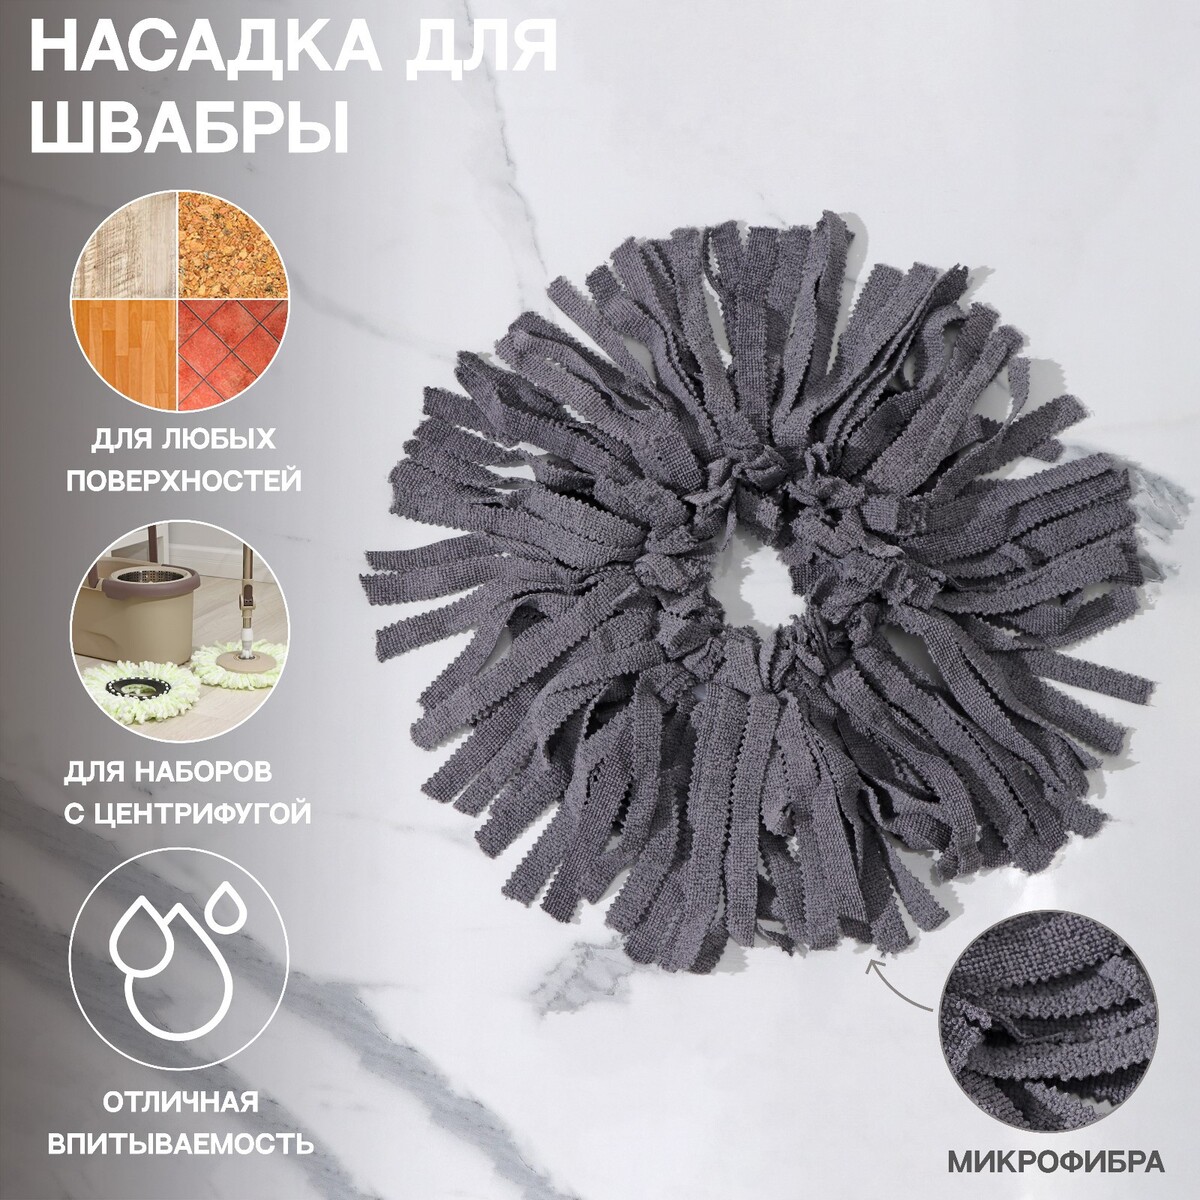 Насадка для швабры (наборы для уборки с центрифугой), кольцо 16 см, микрофибра, цвет серый насадка для швабры xl paul masquin микрофибра